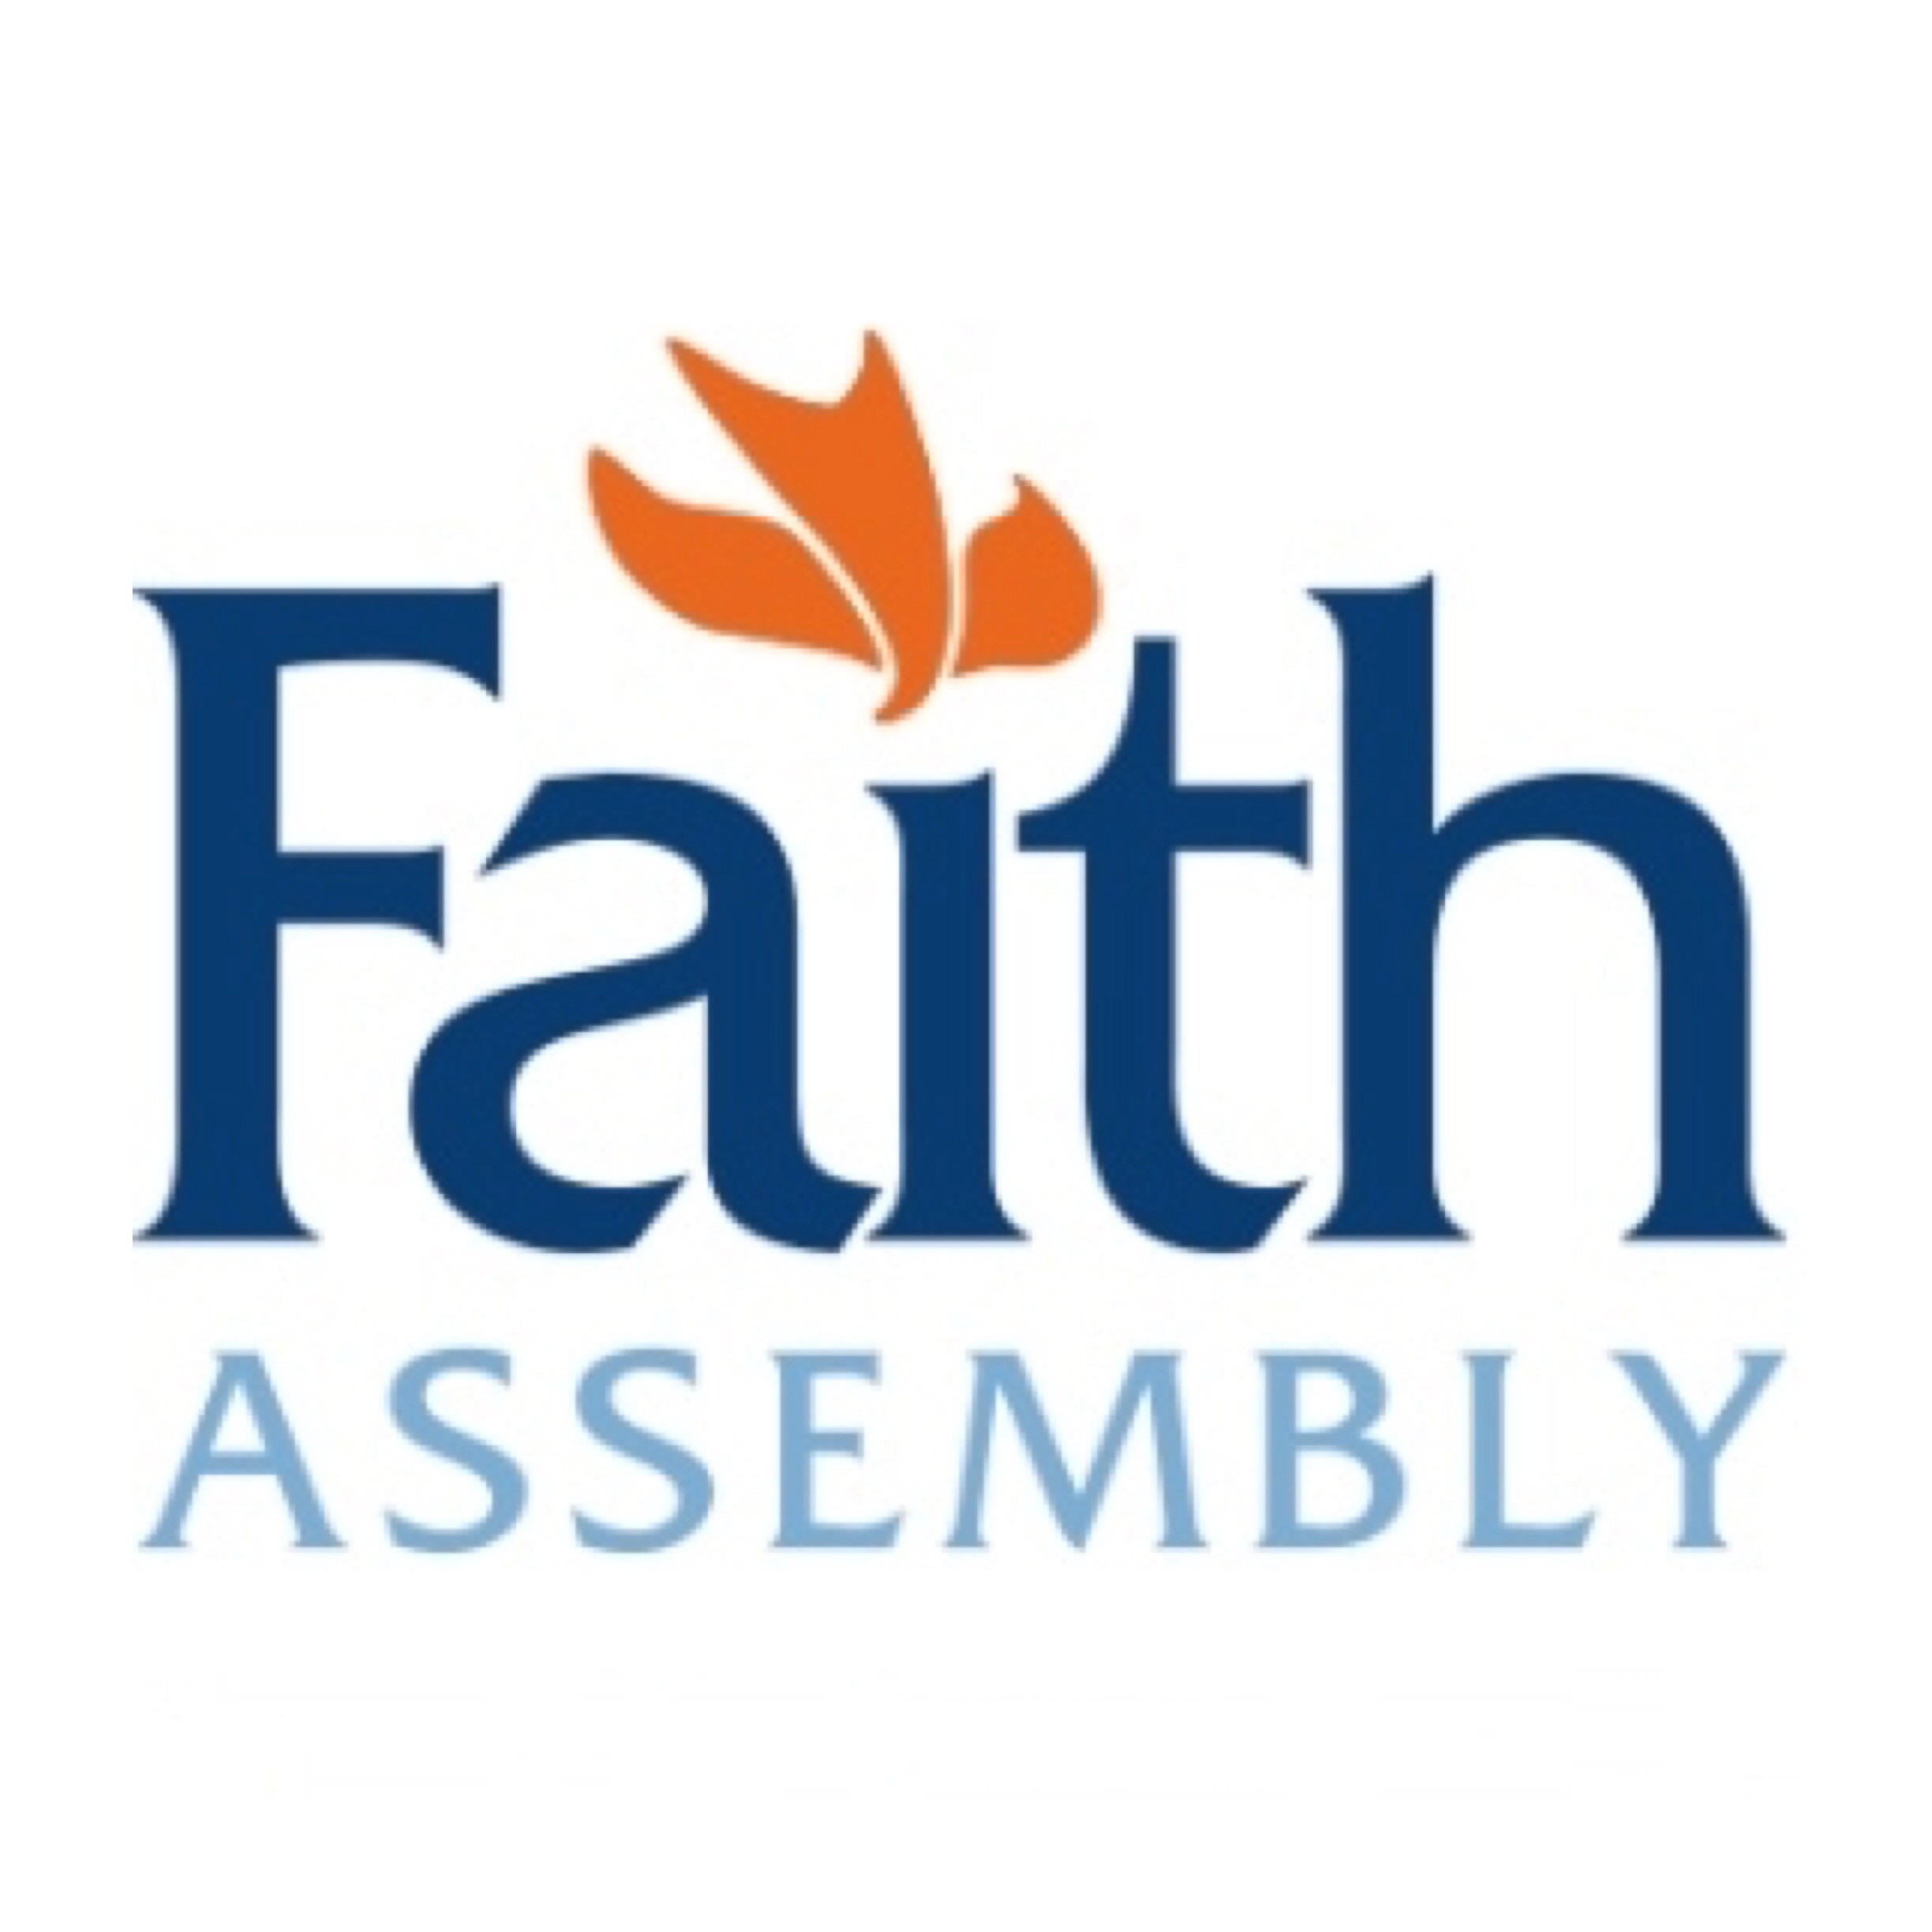 Sermon Audio – Faith Church